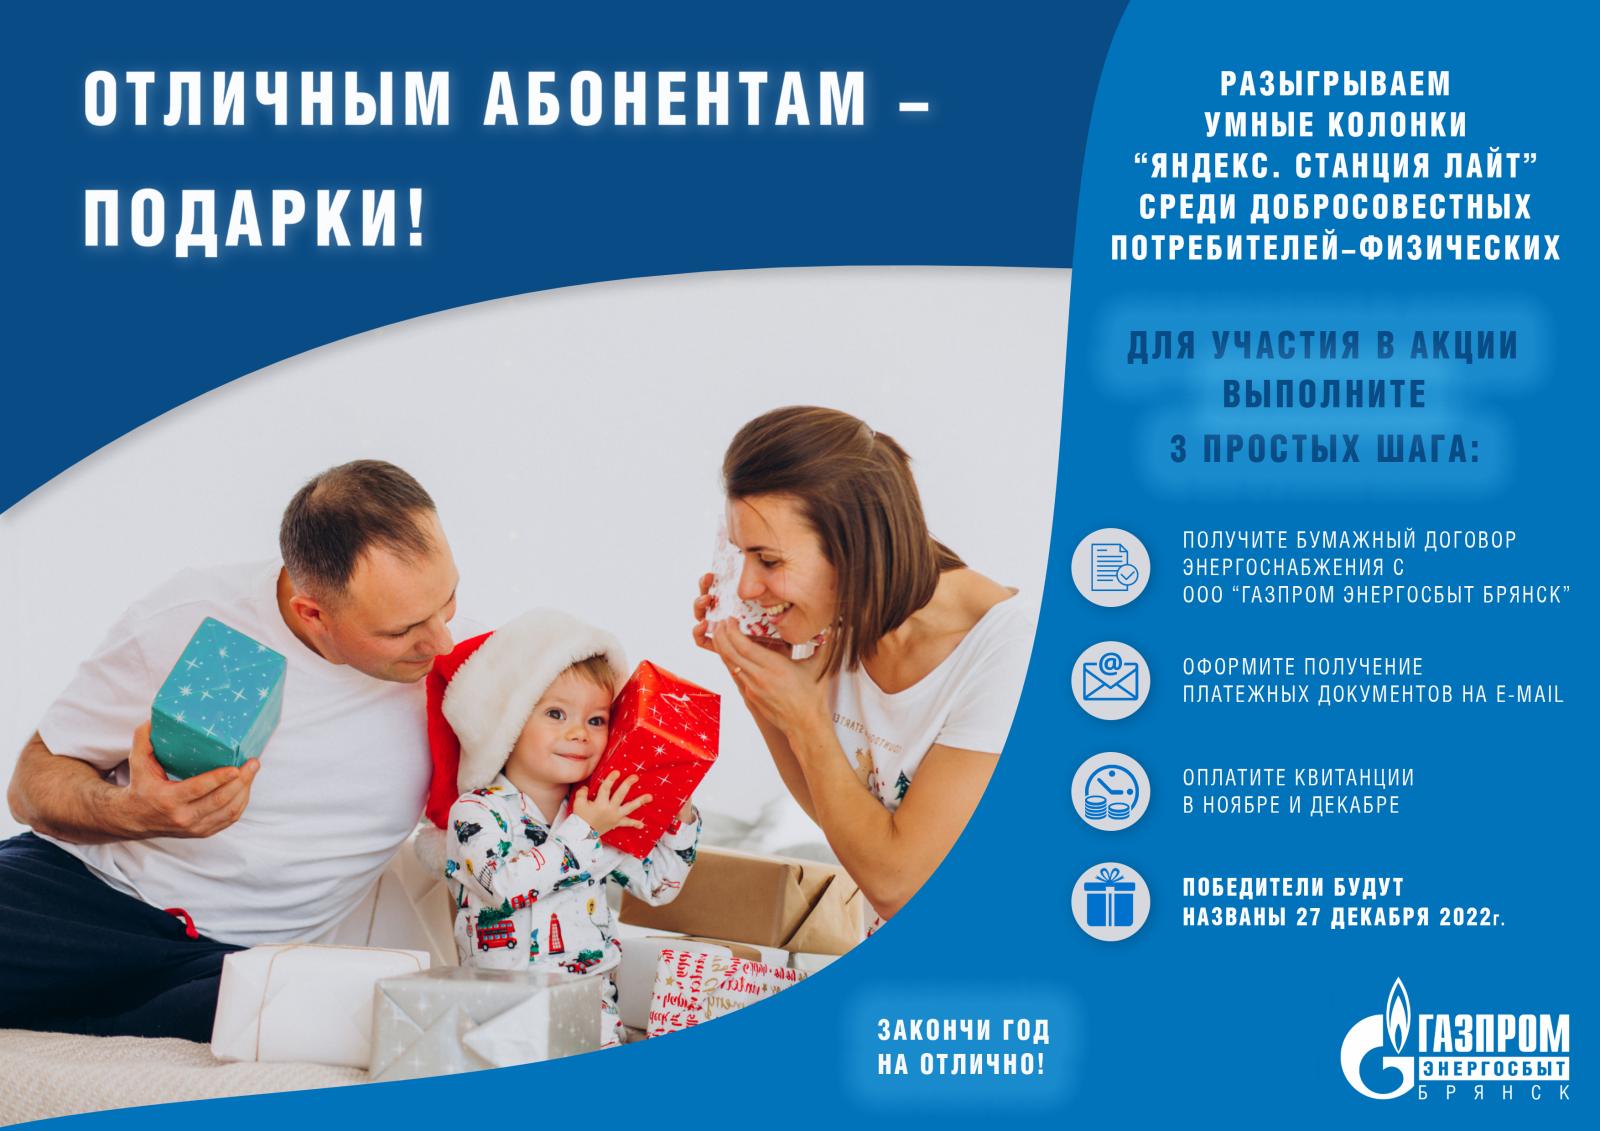 Самые добросовестные потребители ООО «Газпром энергосбыт Брянск» получат призы